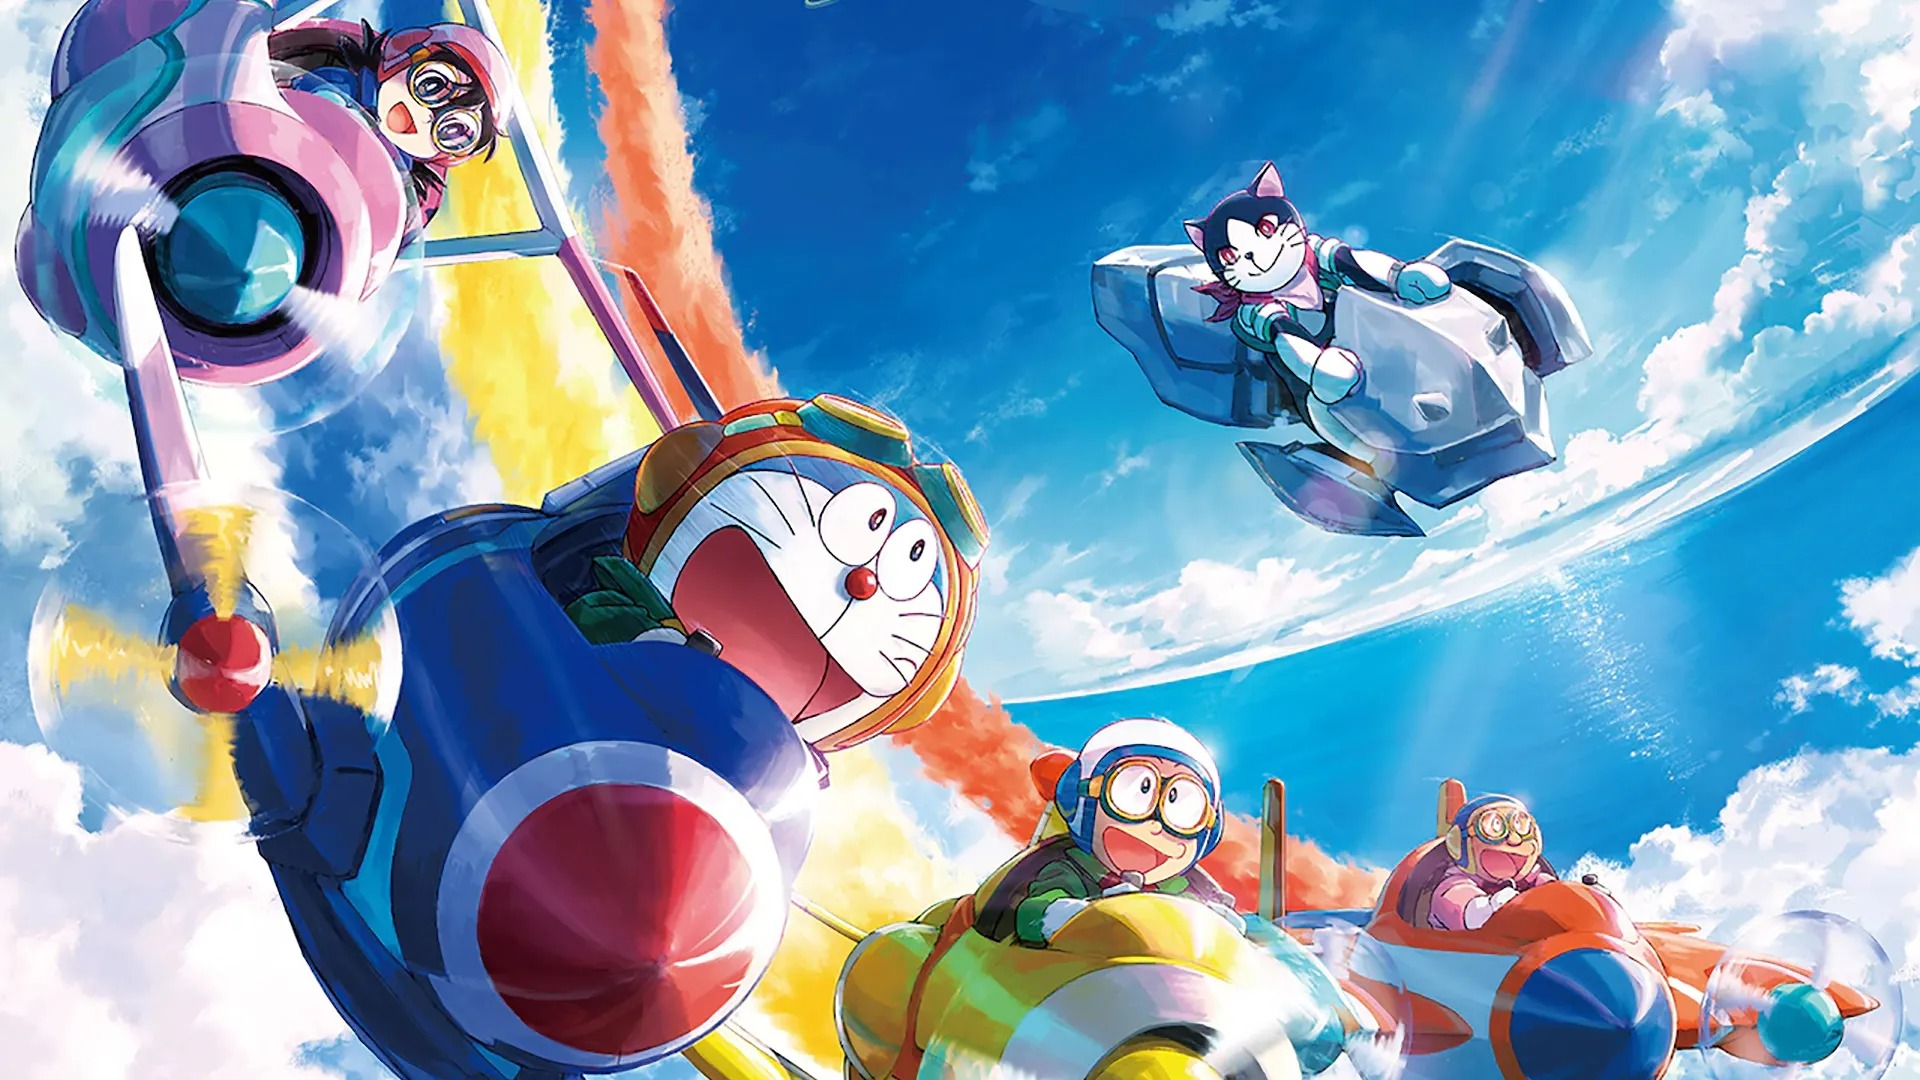 Phim hoạt hình Doraemon phần 42 ra rạp Việt Nam cuối tháng 5 - Hình 1